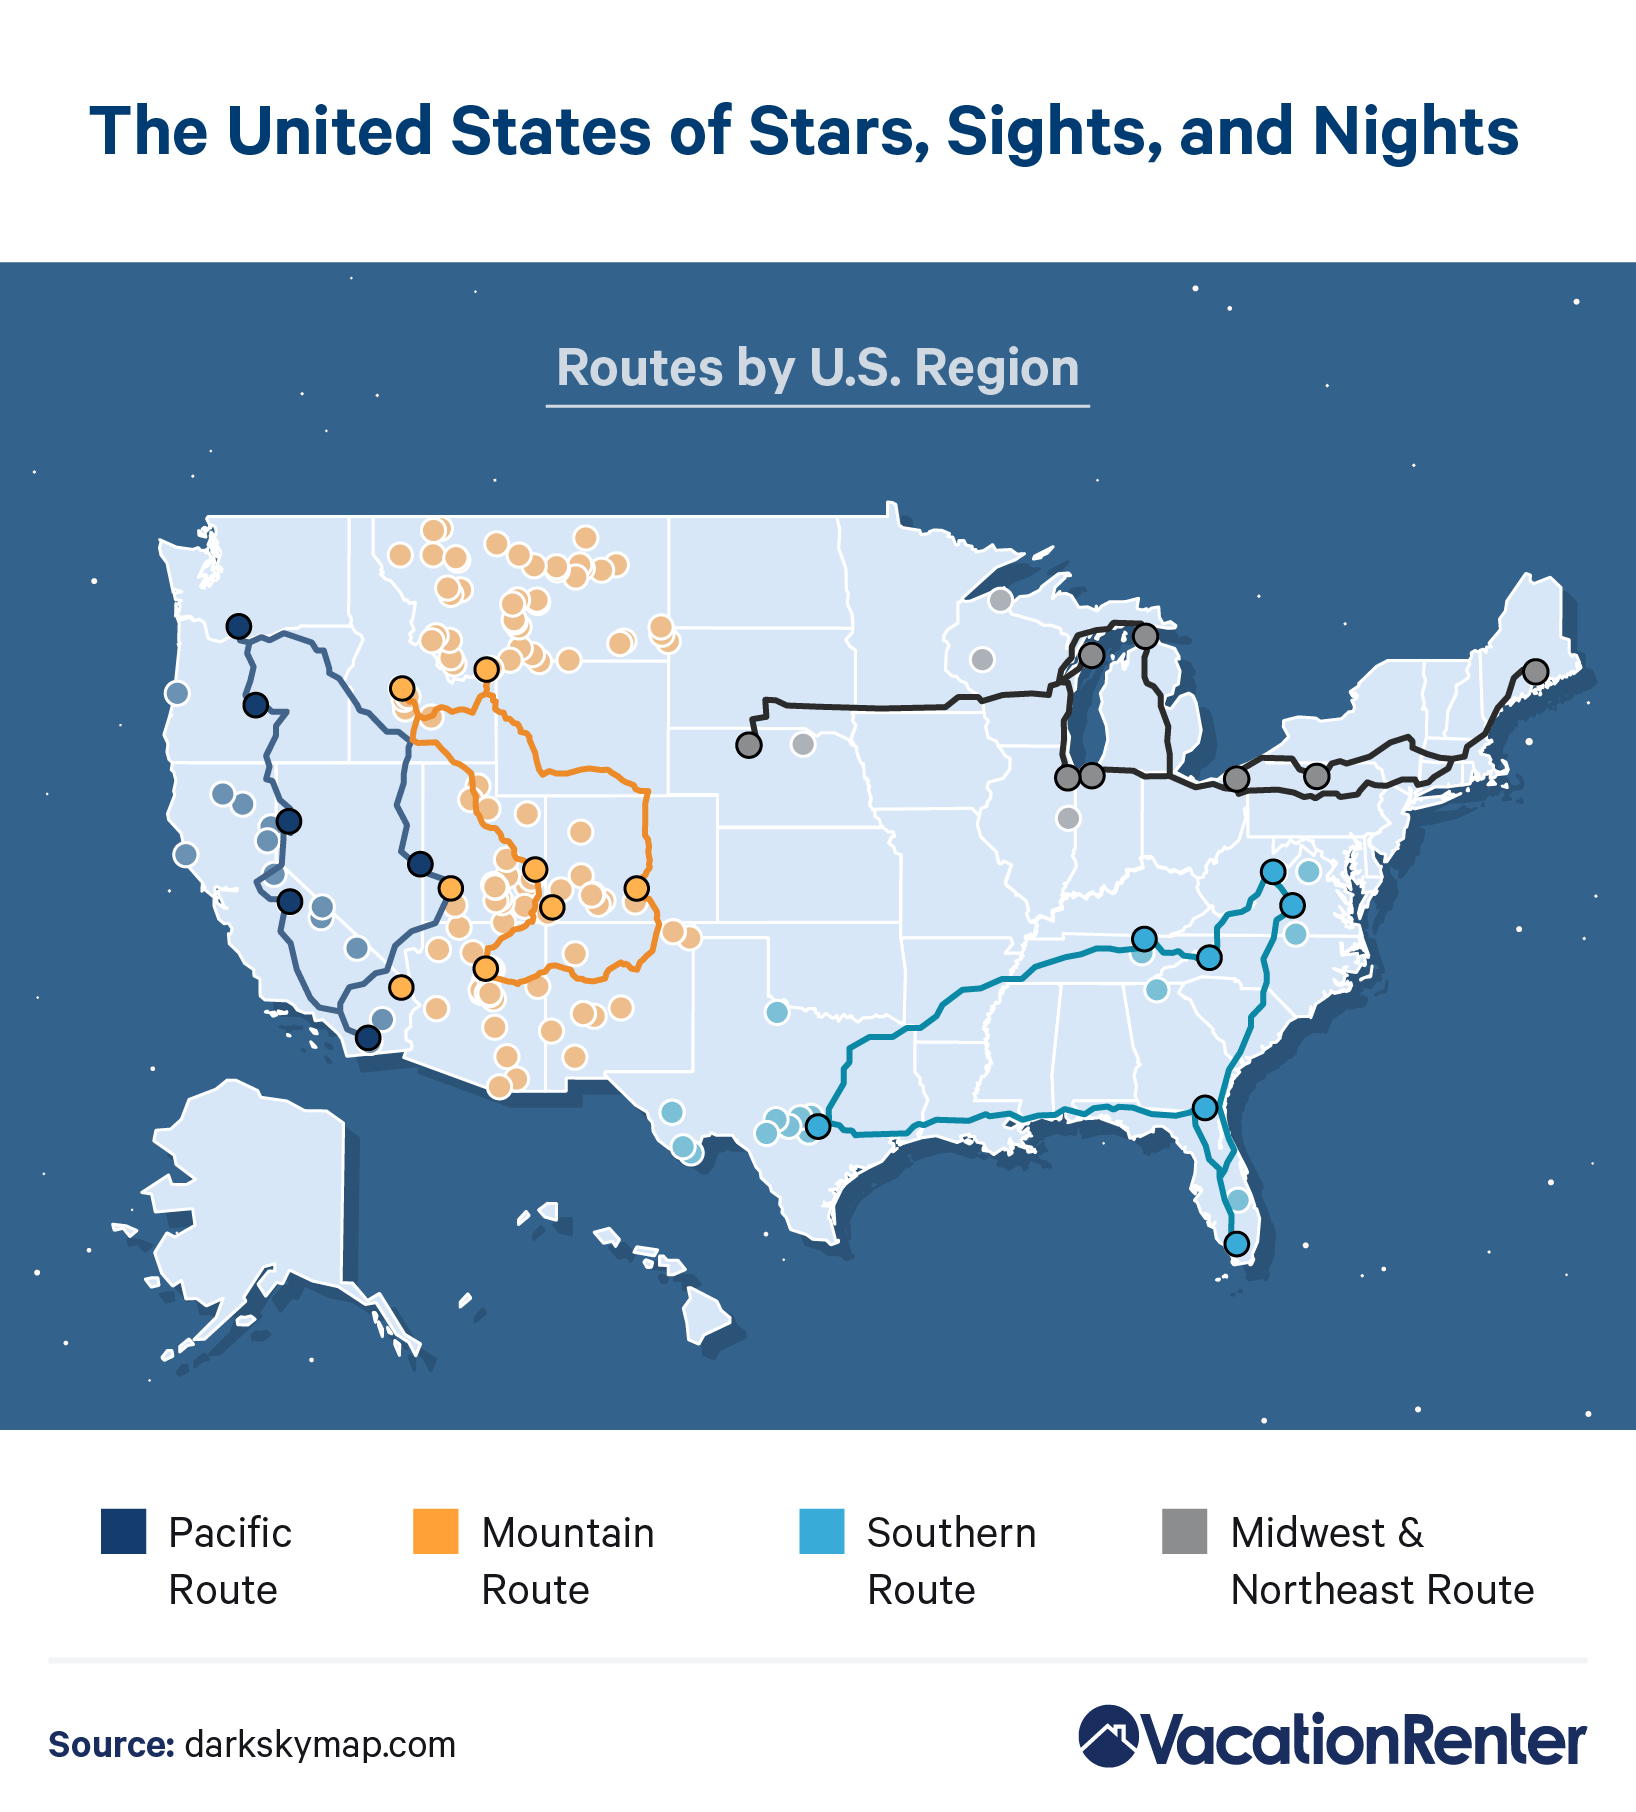 Darkest sky routes by U.S. region